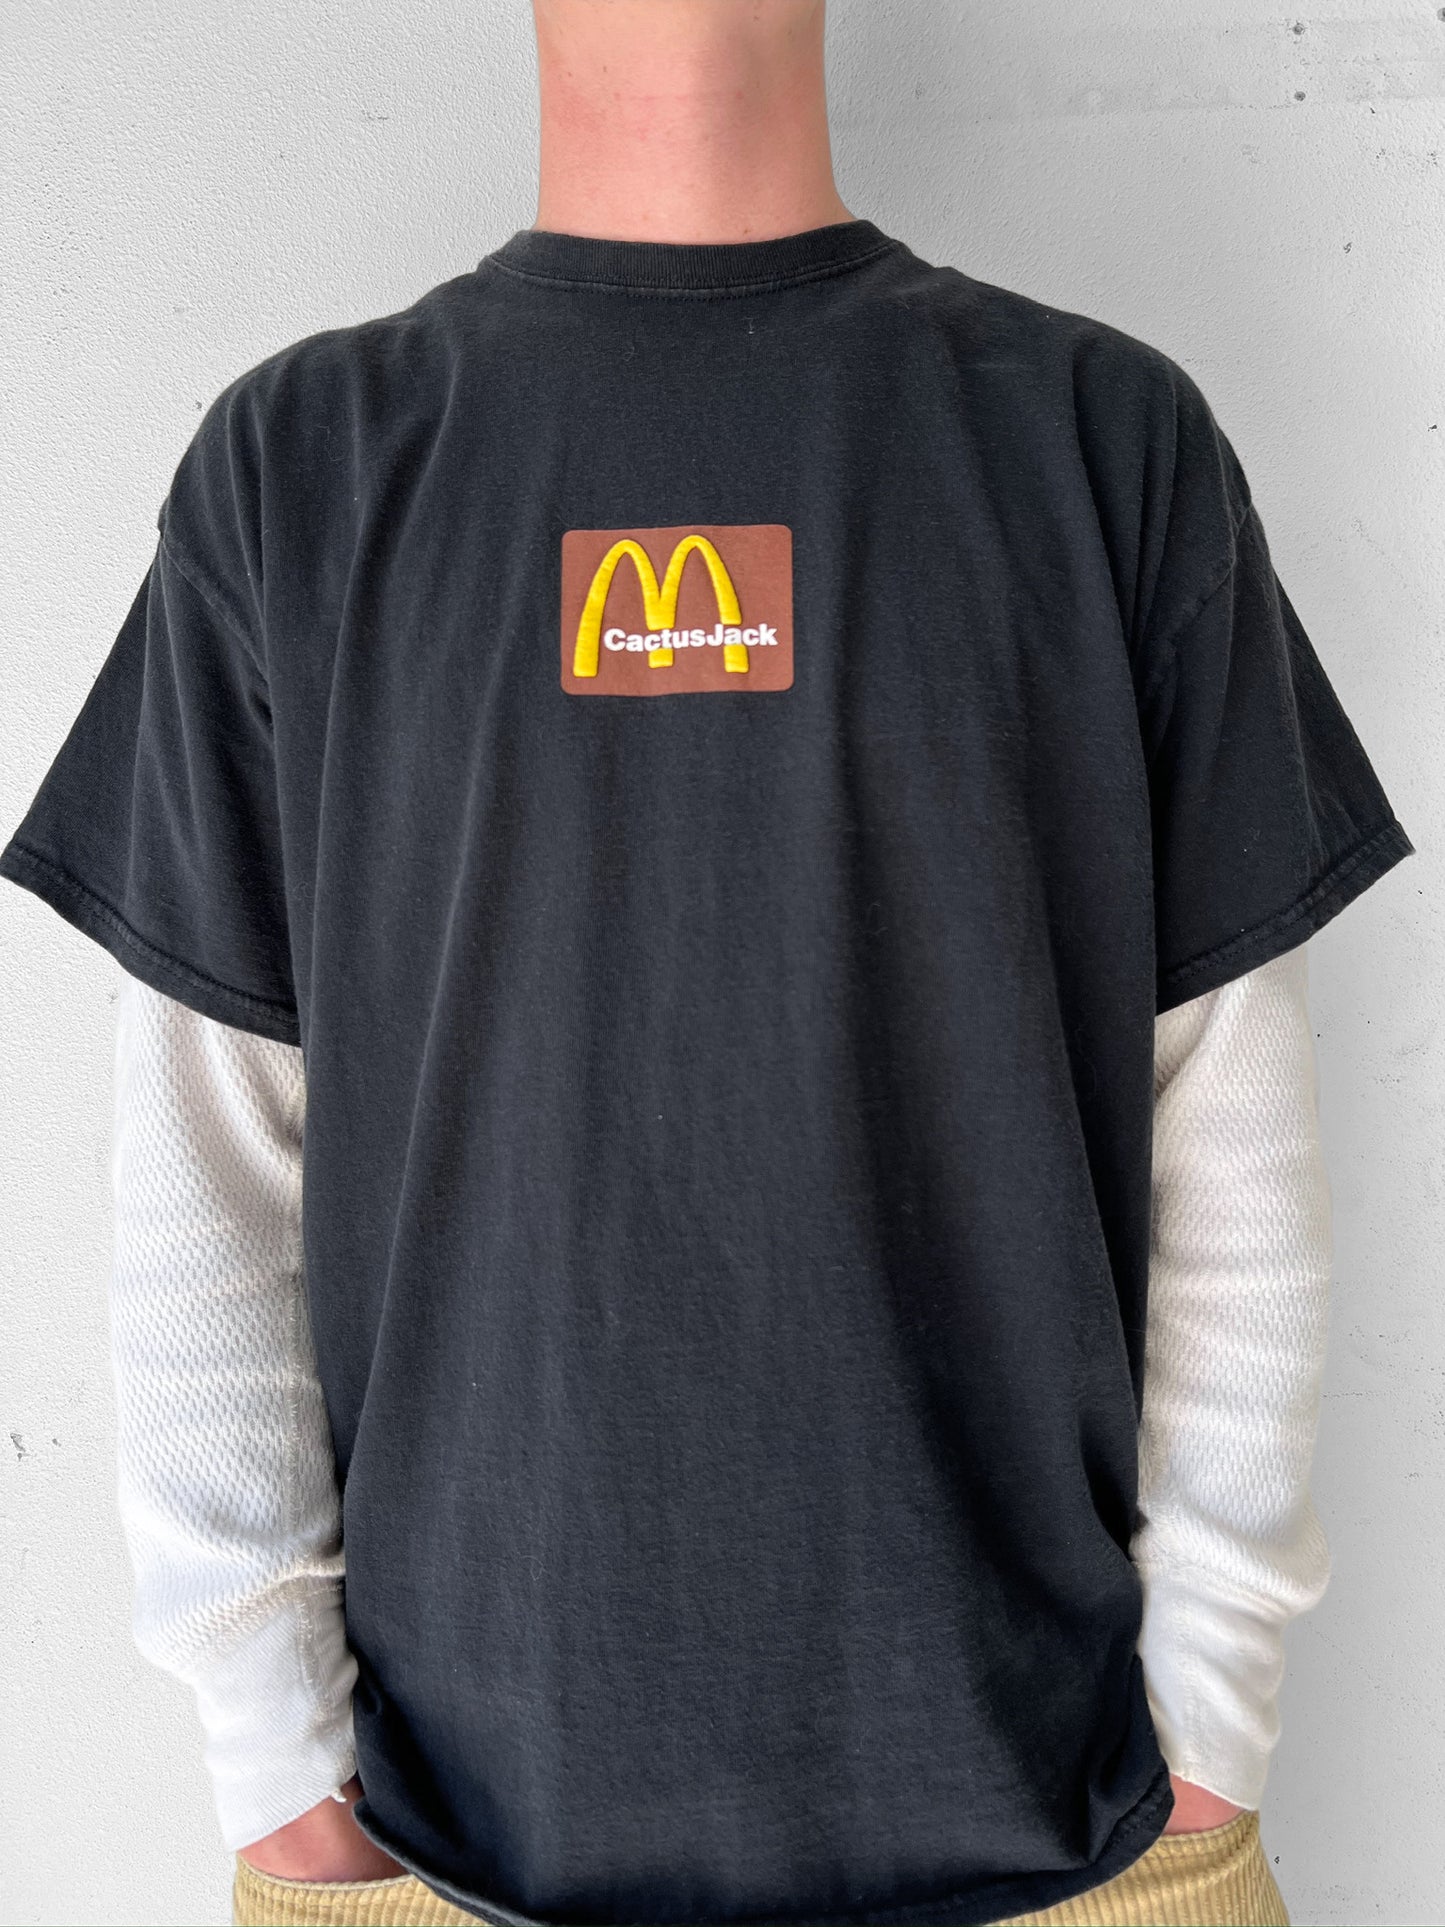 Cactus Jack x McDonalds Collab Shirt - L